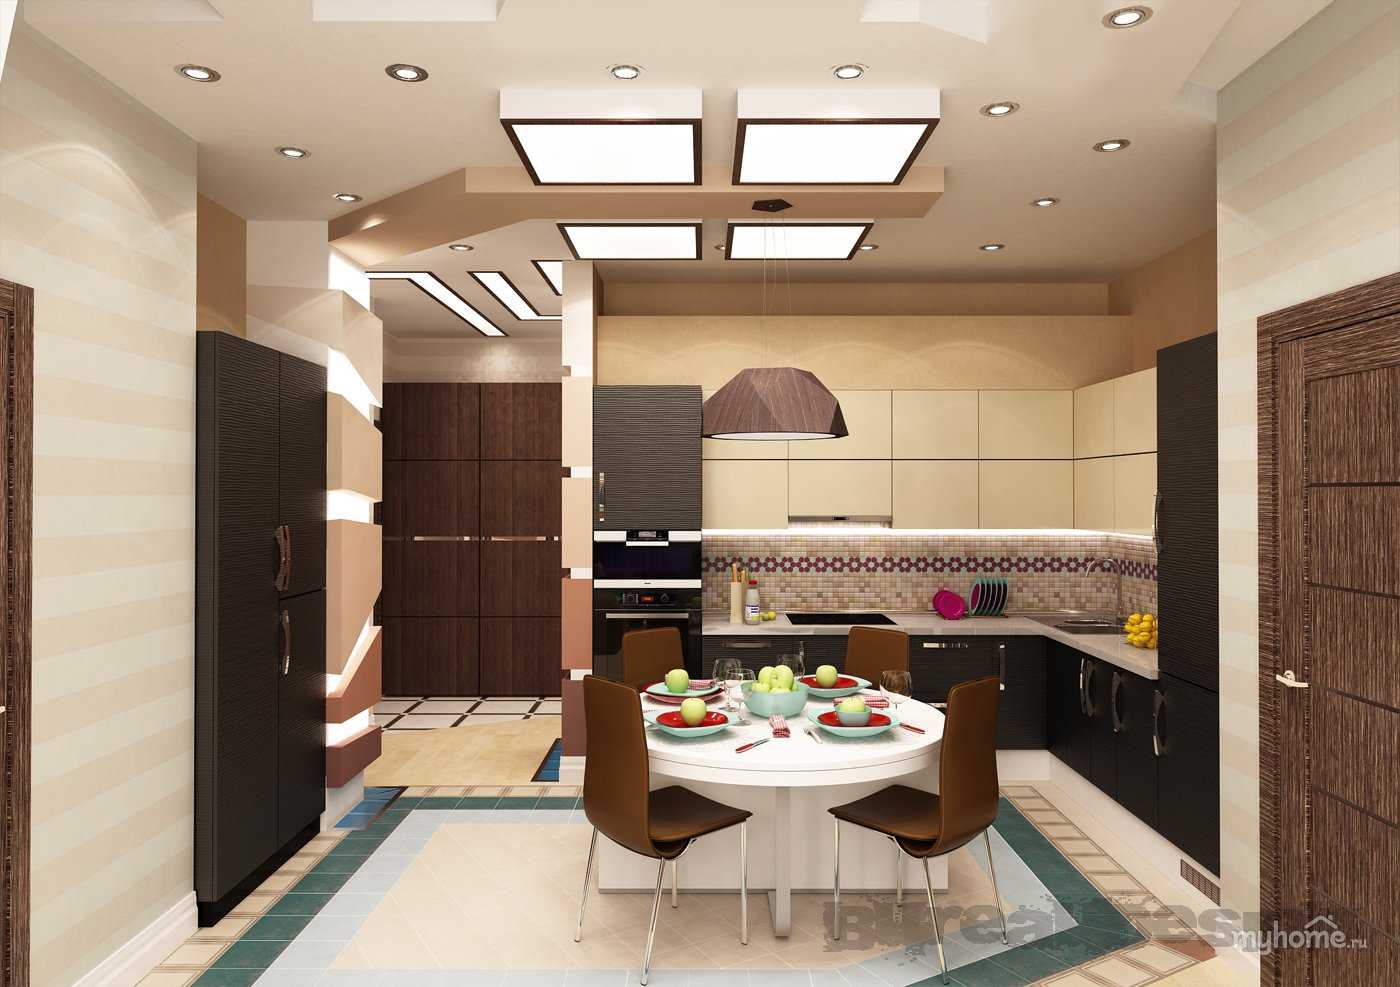 Кухня в коридоре: как совместить, дизайн прихожей, планировка в частном доме | дизайн и фото